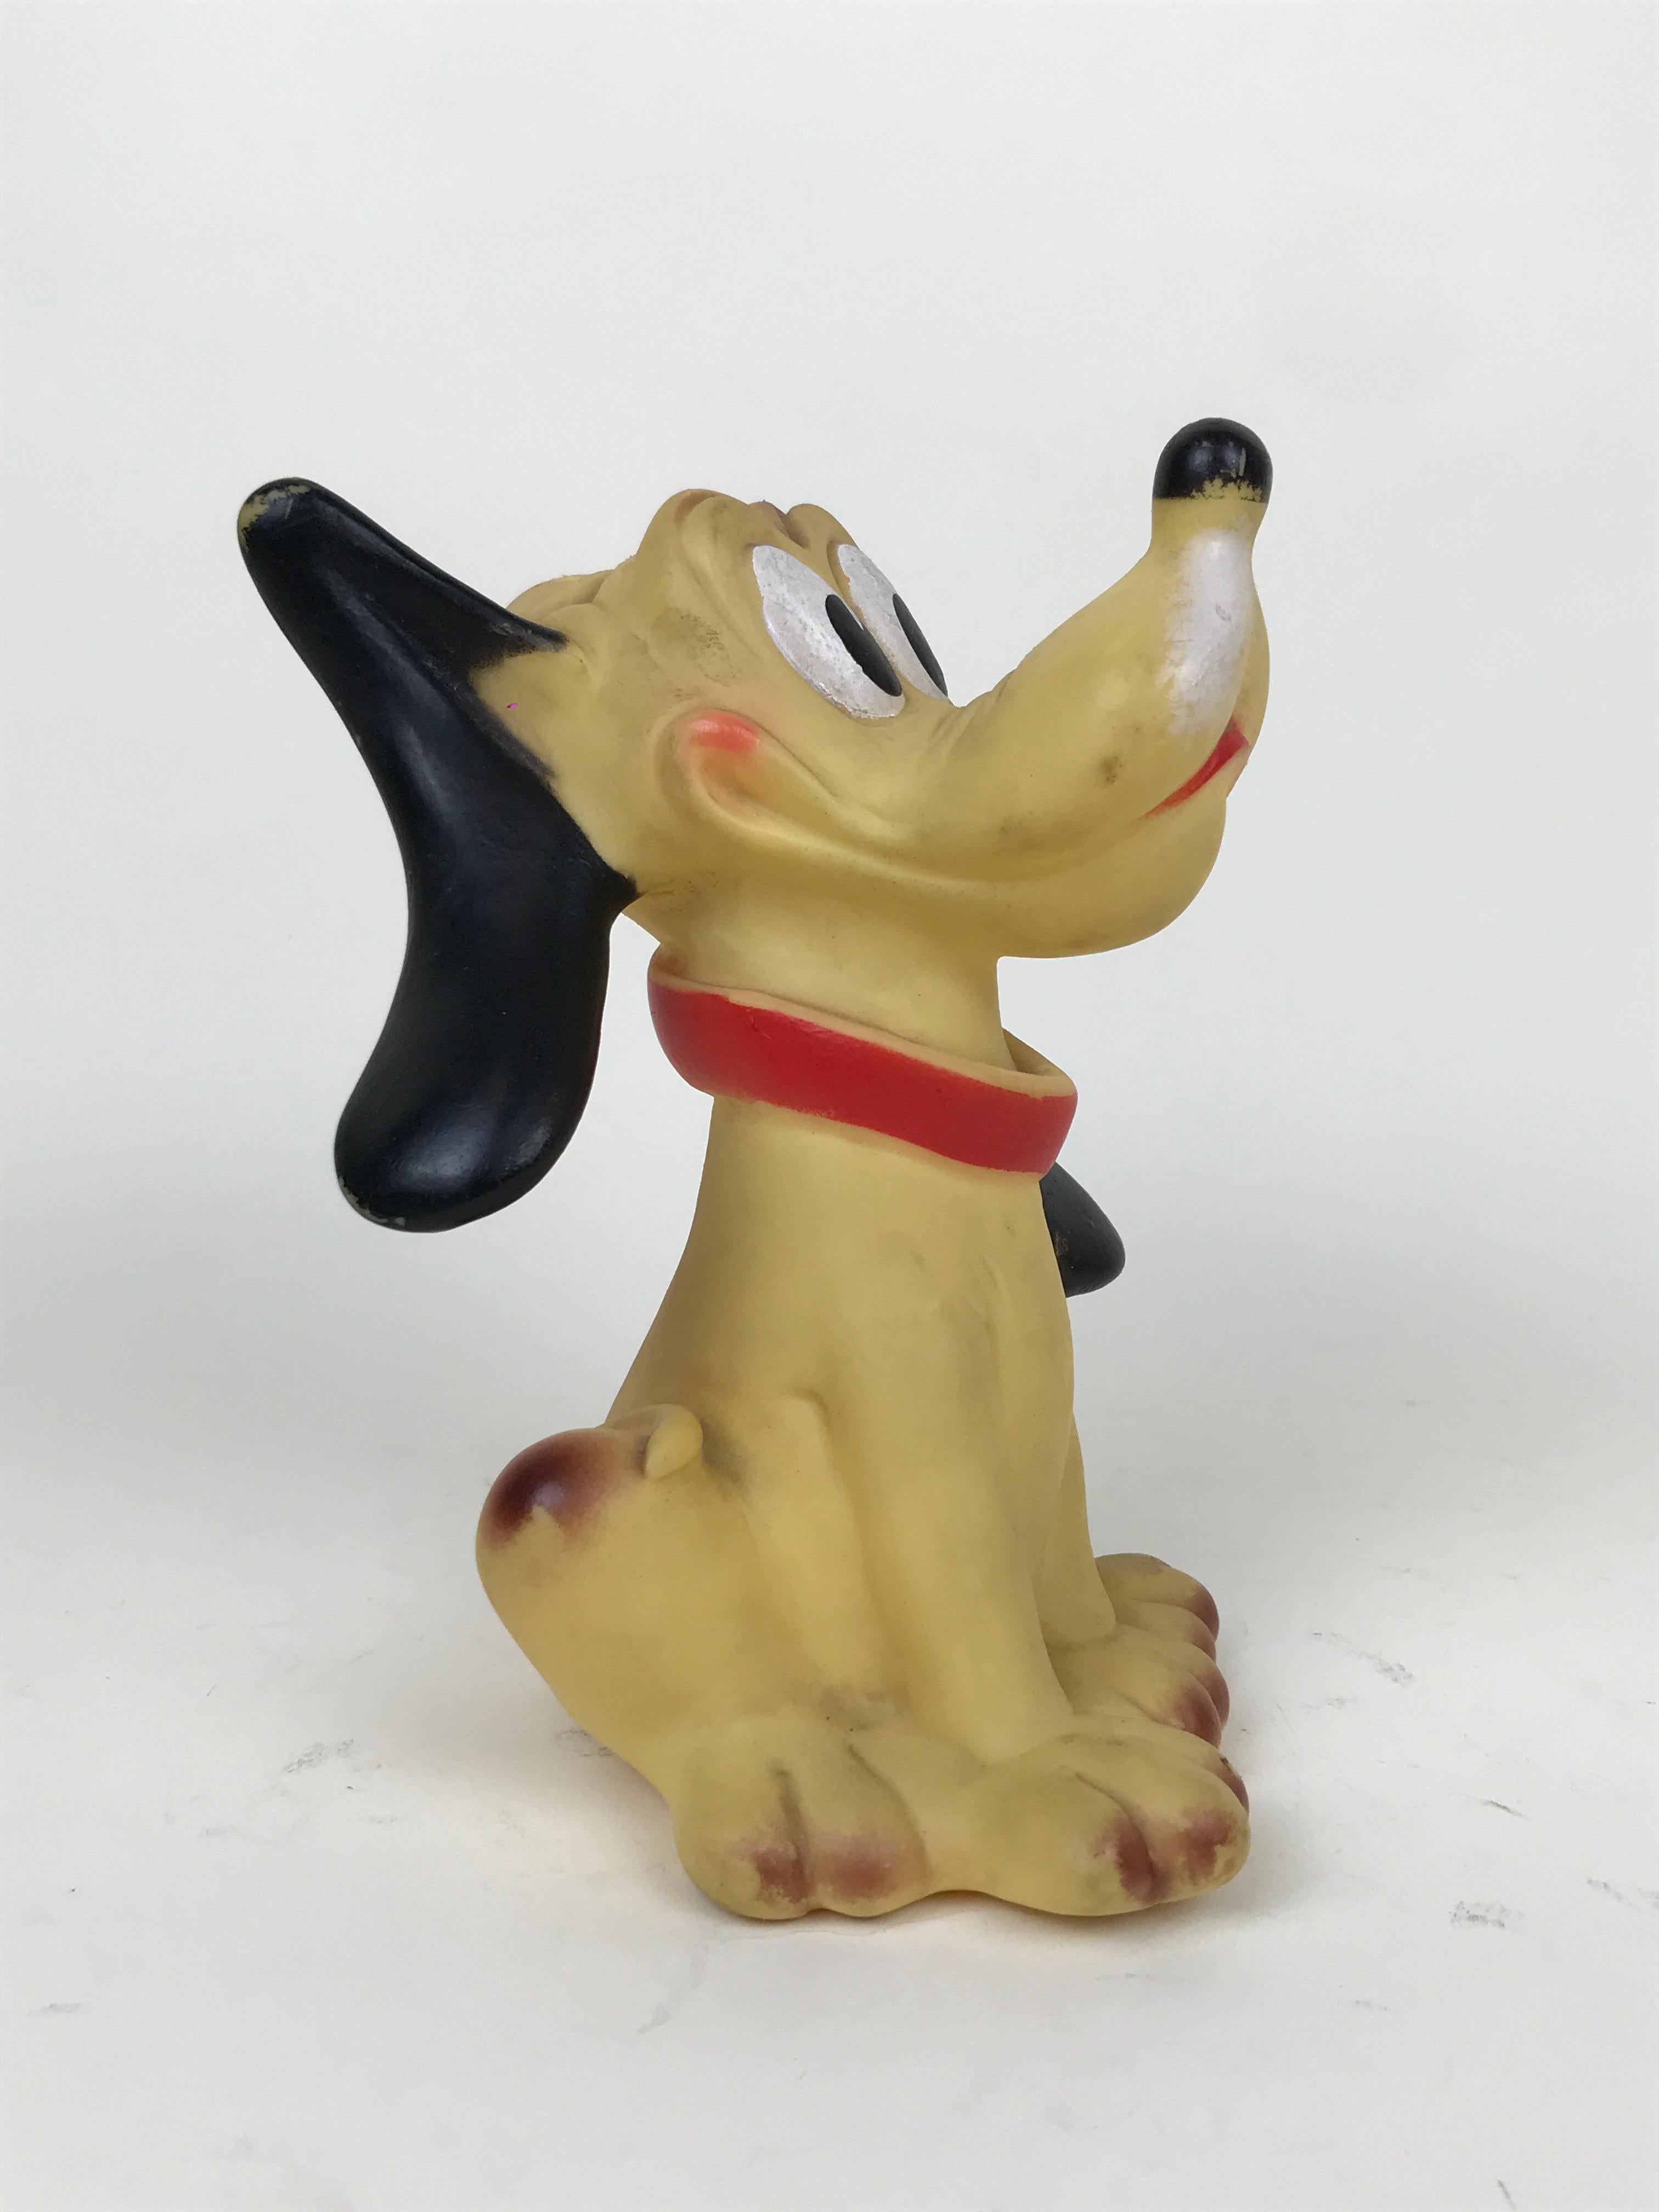 1960s Vintage Original Disney Pluto Rubber Squeak Toy Made in Italy Ledraplastic 1